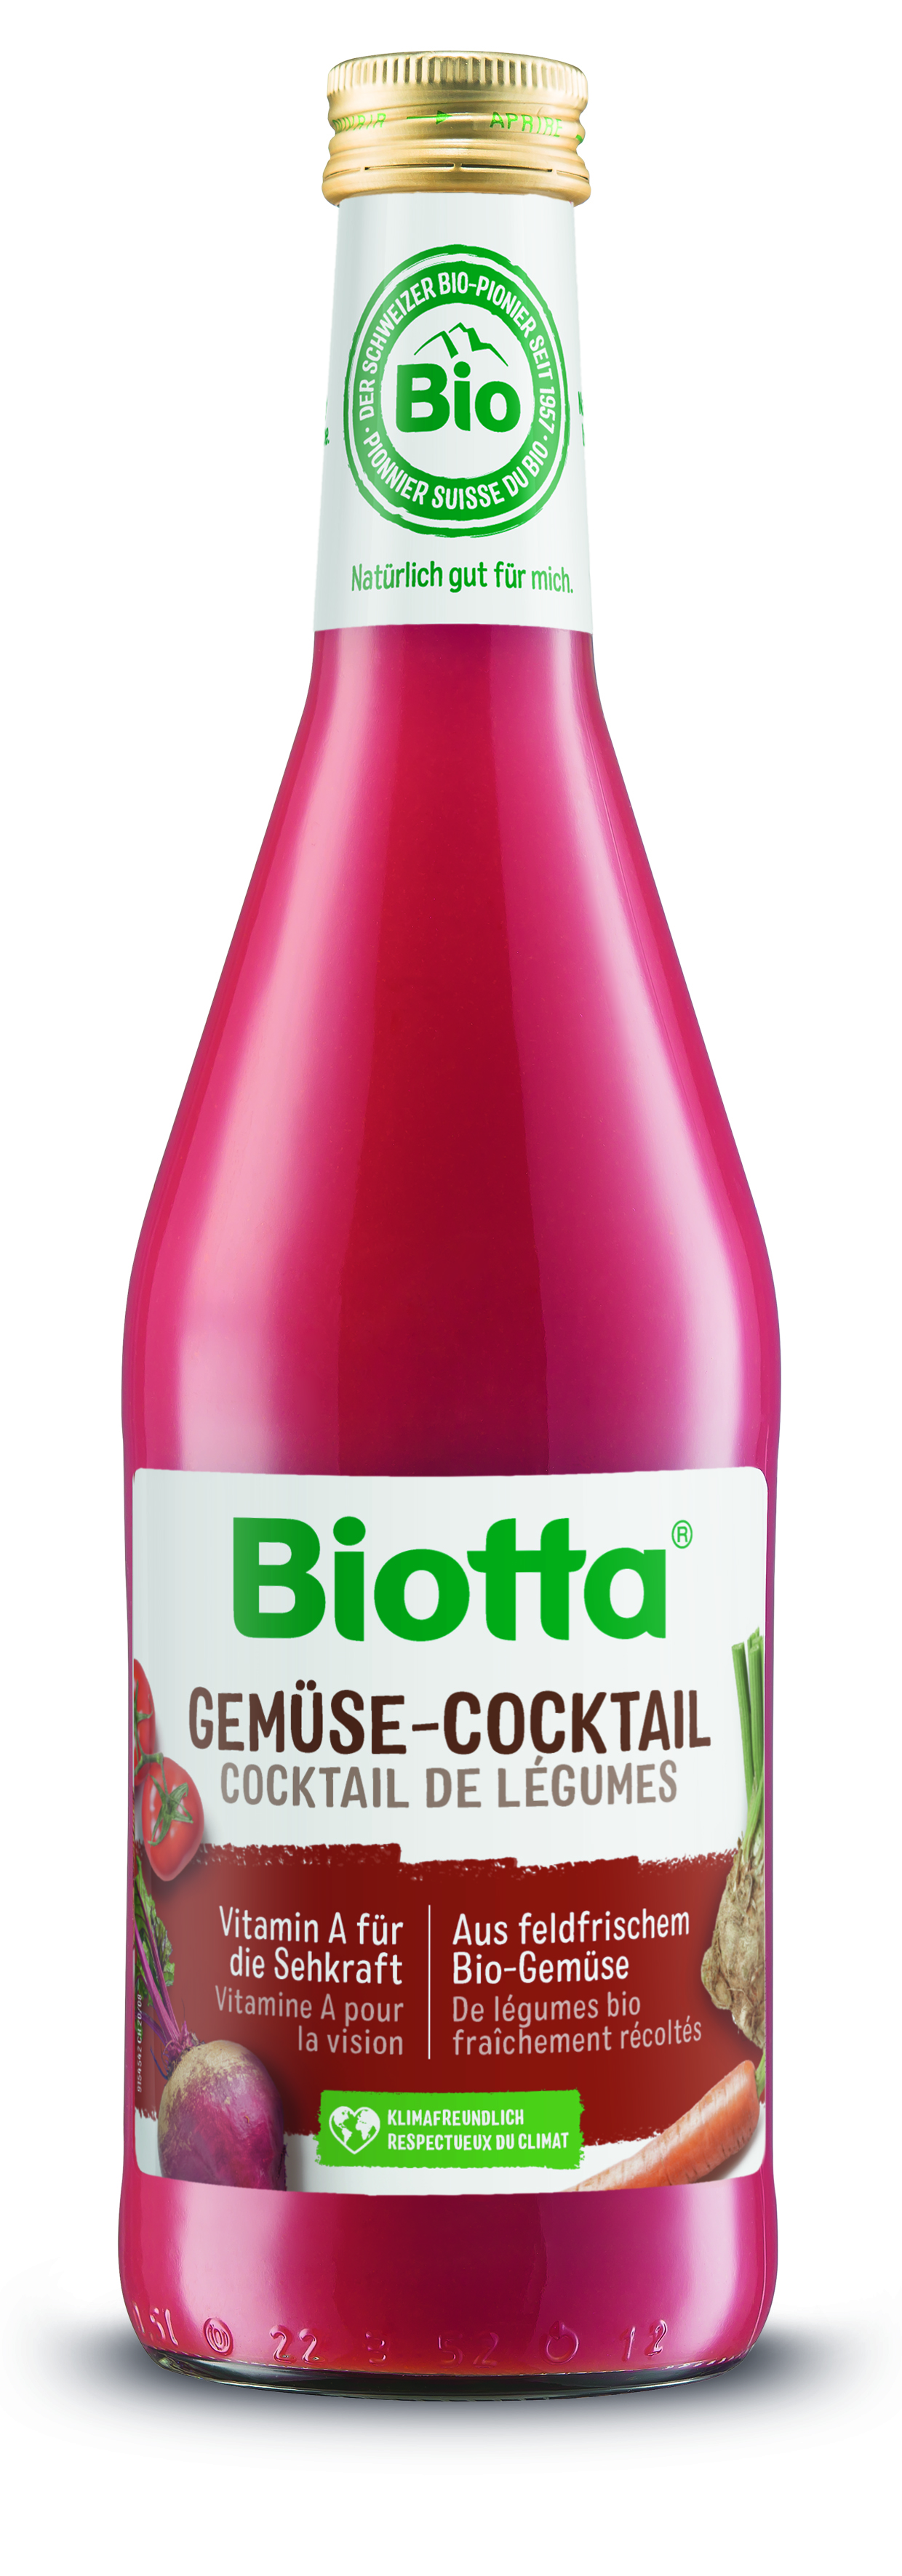 Biotta zeleninový kokteil 2 kartóny - cena za 1 ks 3,66€ s DPH